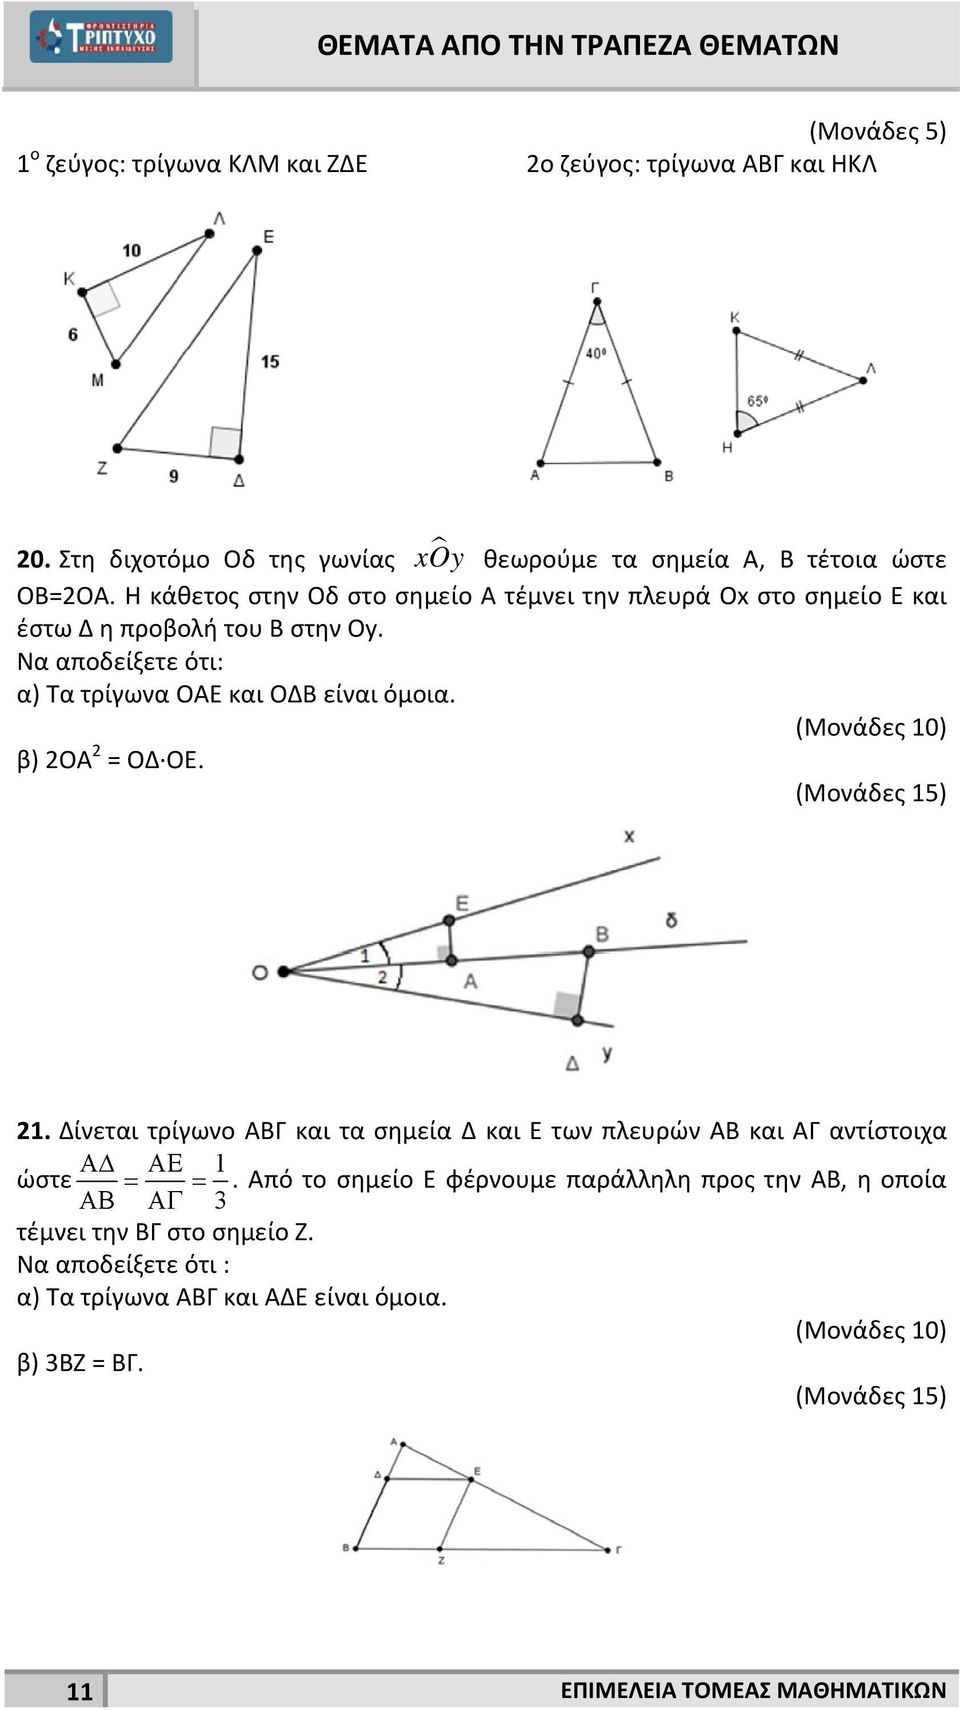 Να αποδείξετε ότι: α) Τα τρίγωνα ΟΑΕ και ΟΔΒ είναι όμοια. β) ΟΑ = ΟΔ ΟΕ. (Μονάδες 15) 1.